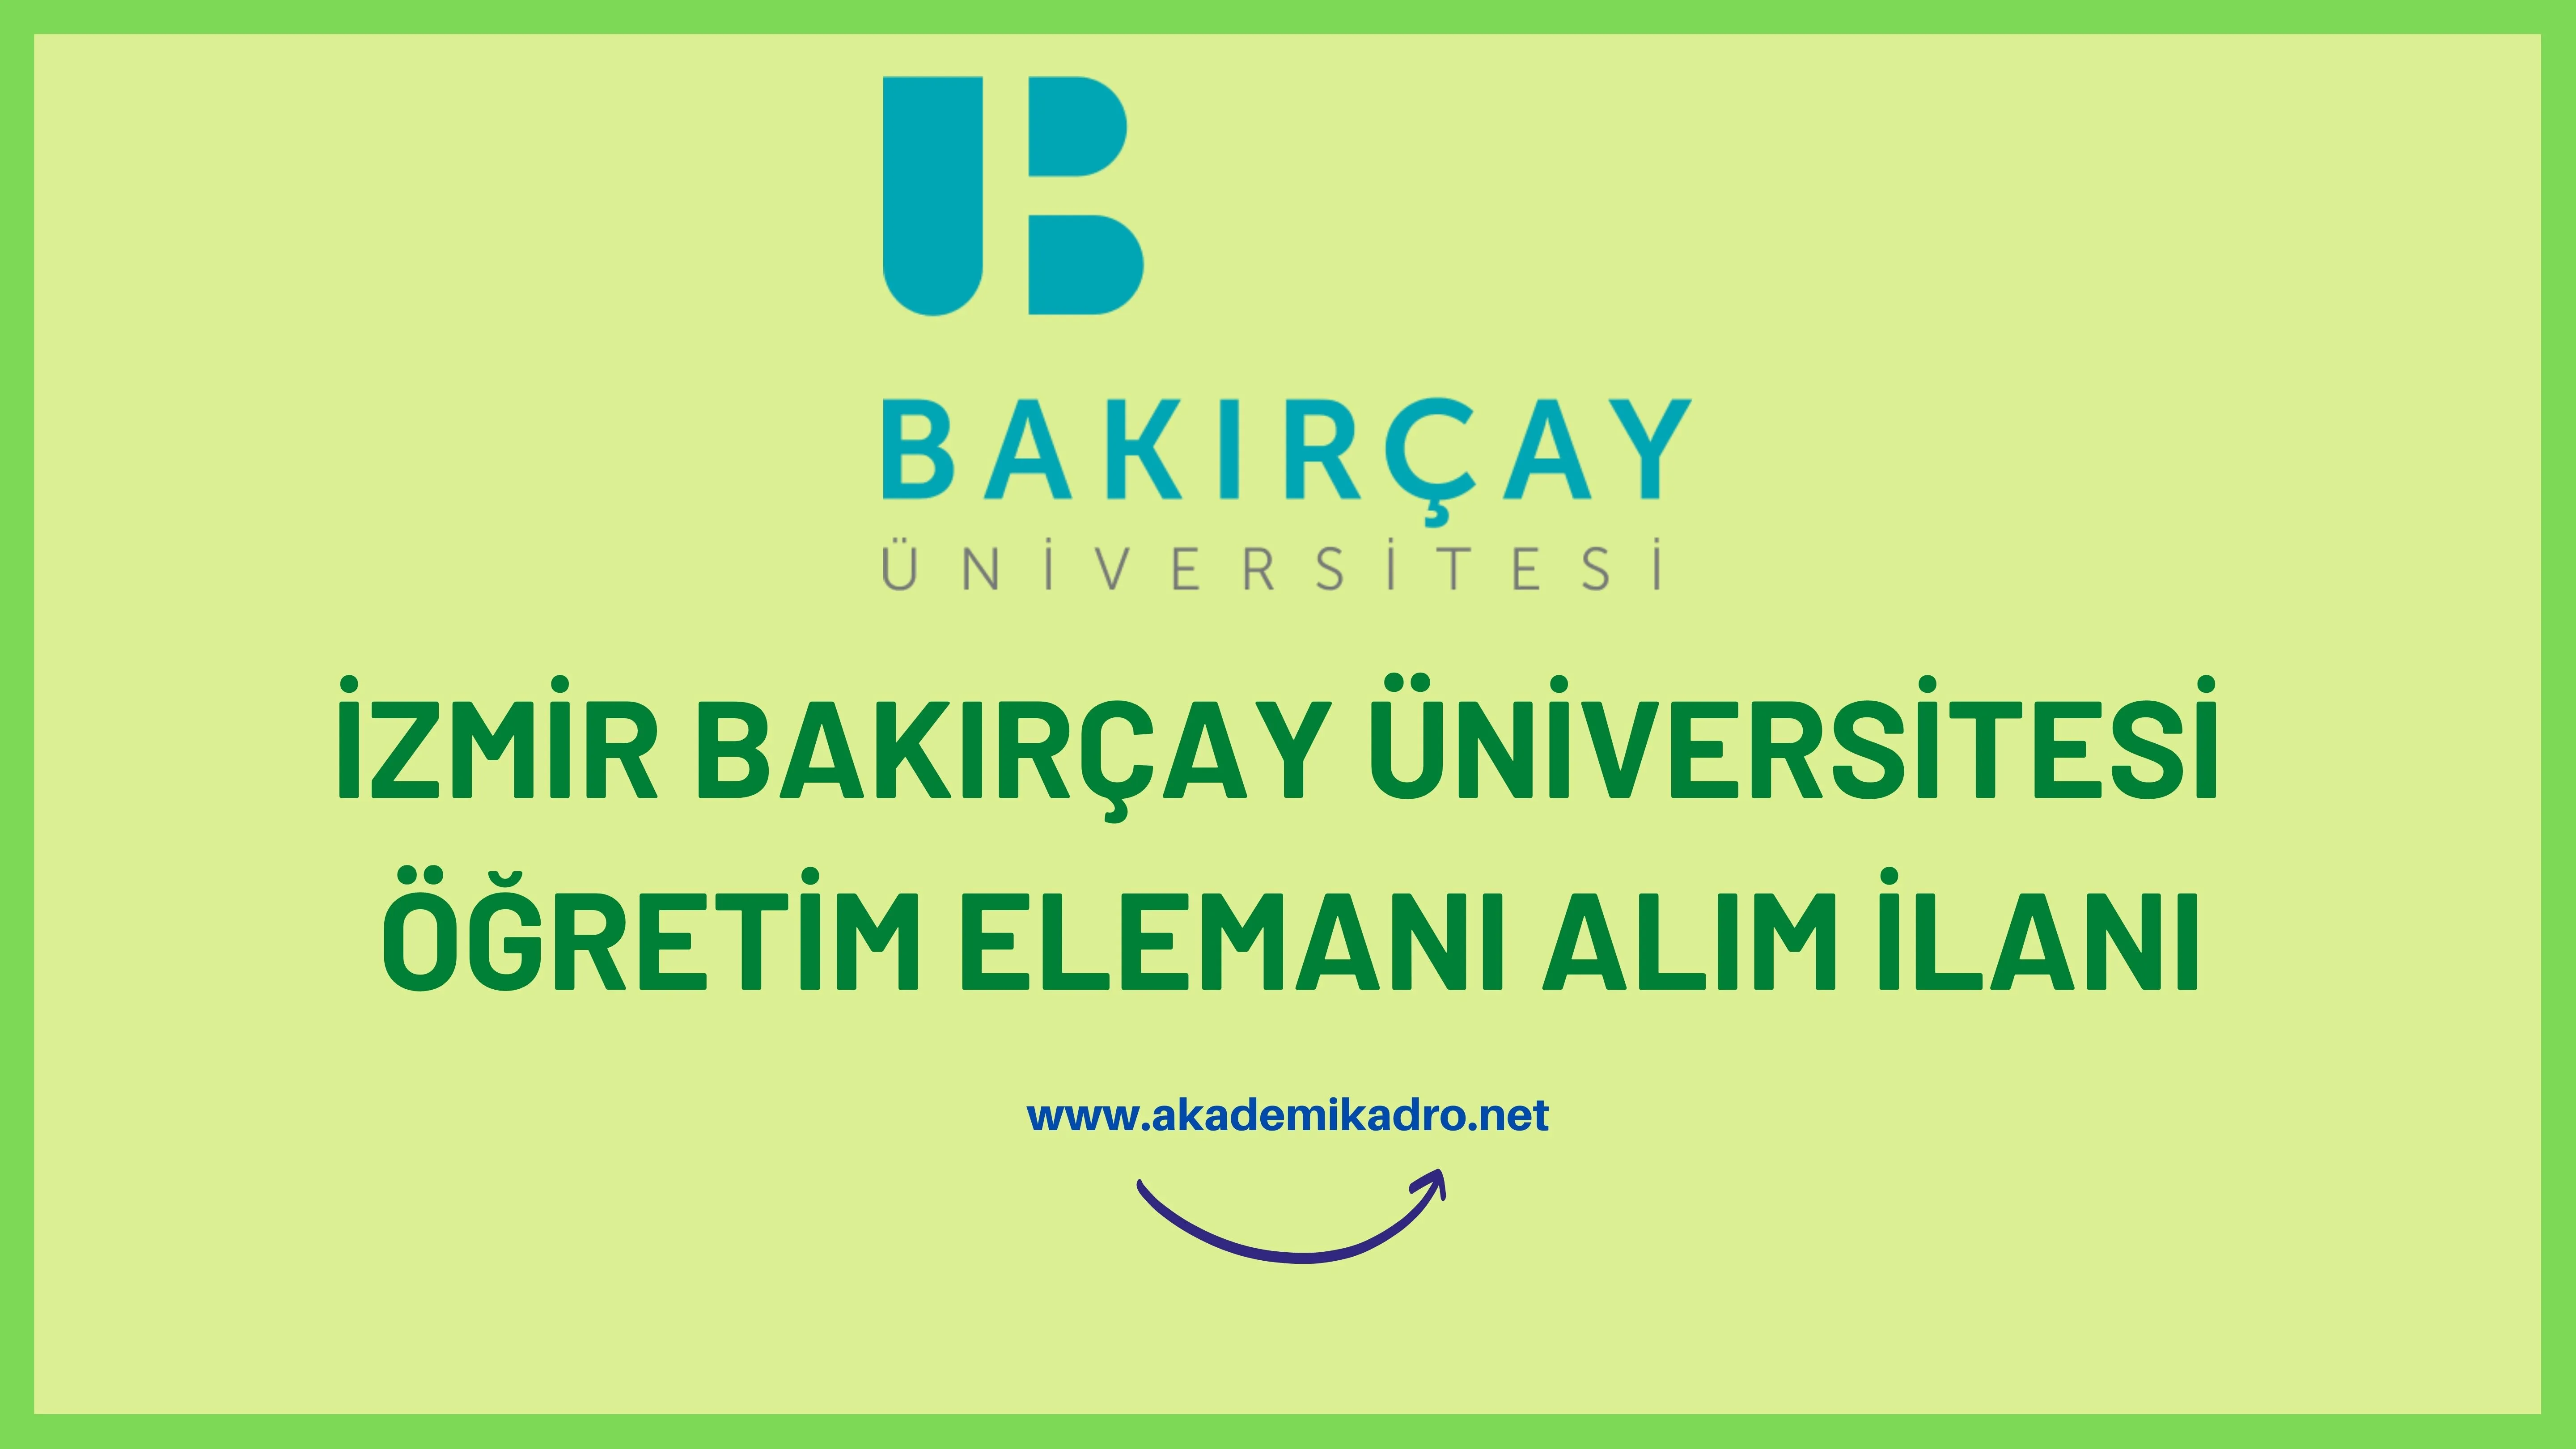 İzmir Bakırçay Üniversitesi 2 Öğretim görevlisi ve 17 Öğretim üyesi alacak.